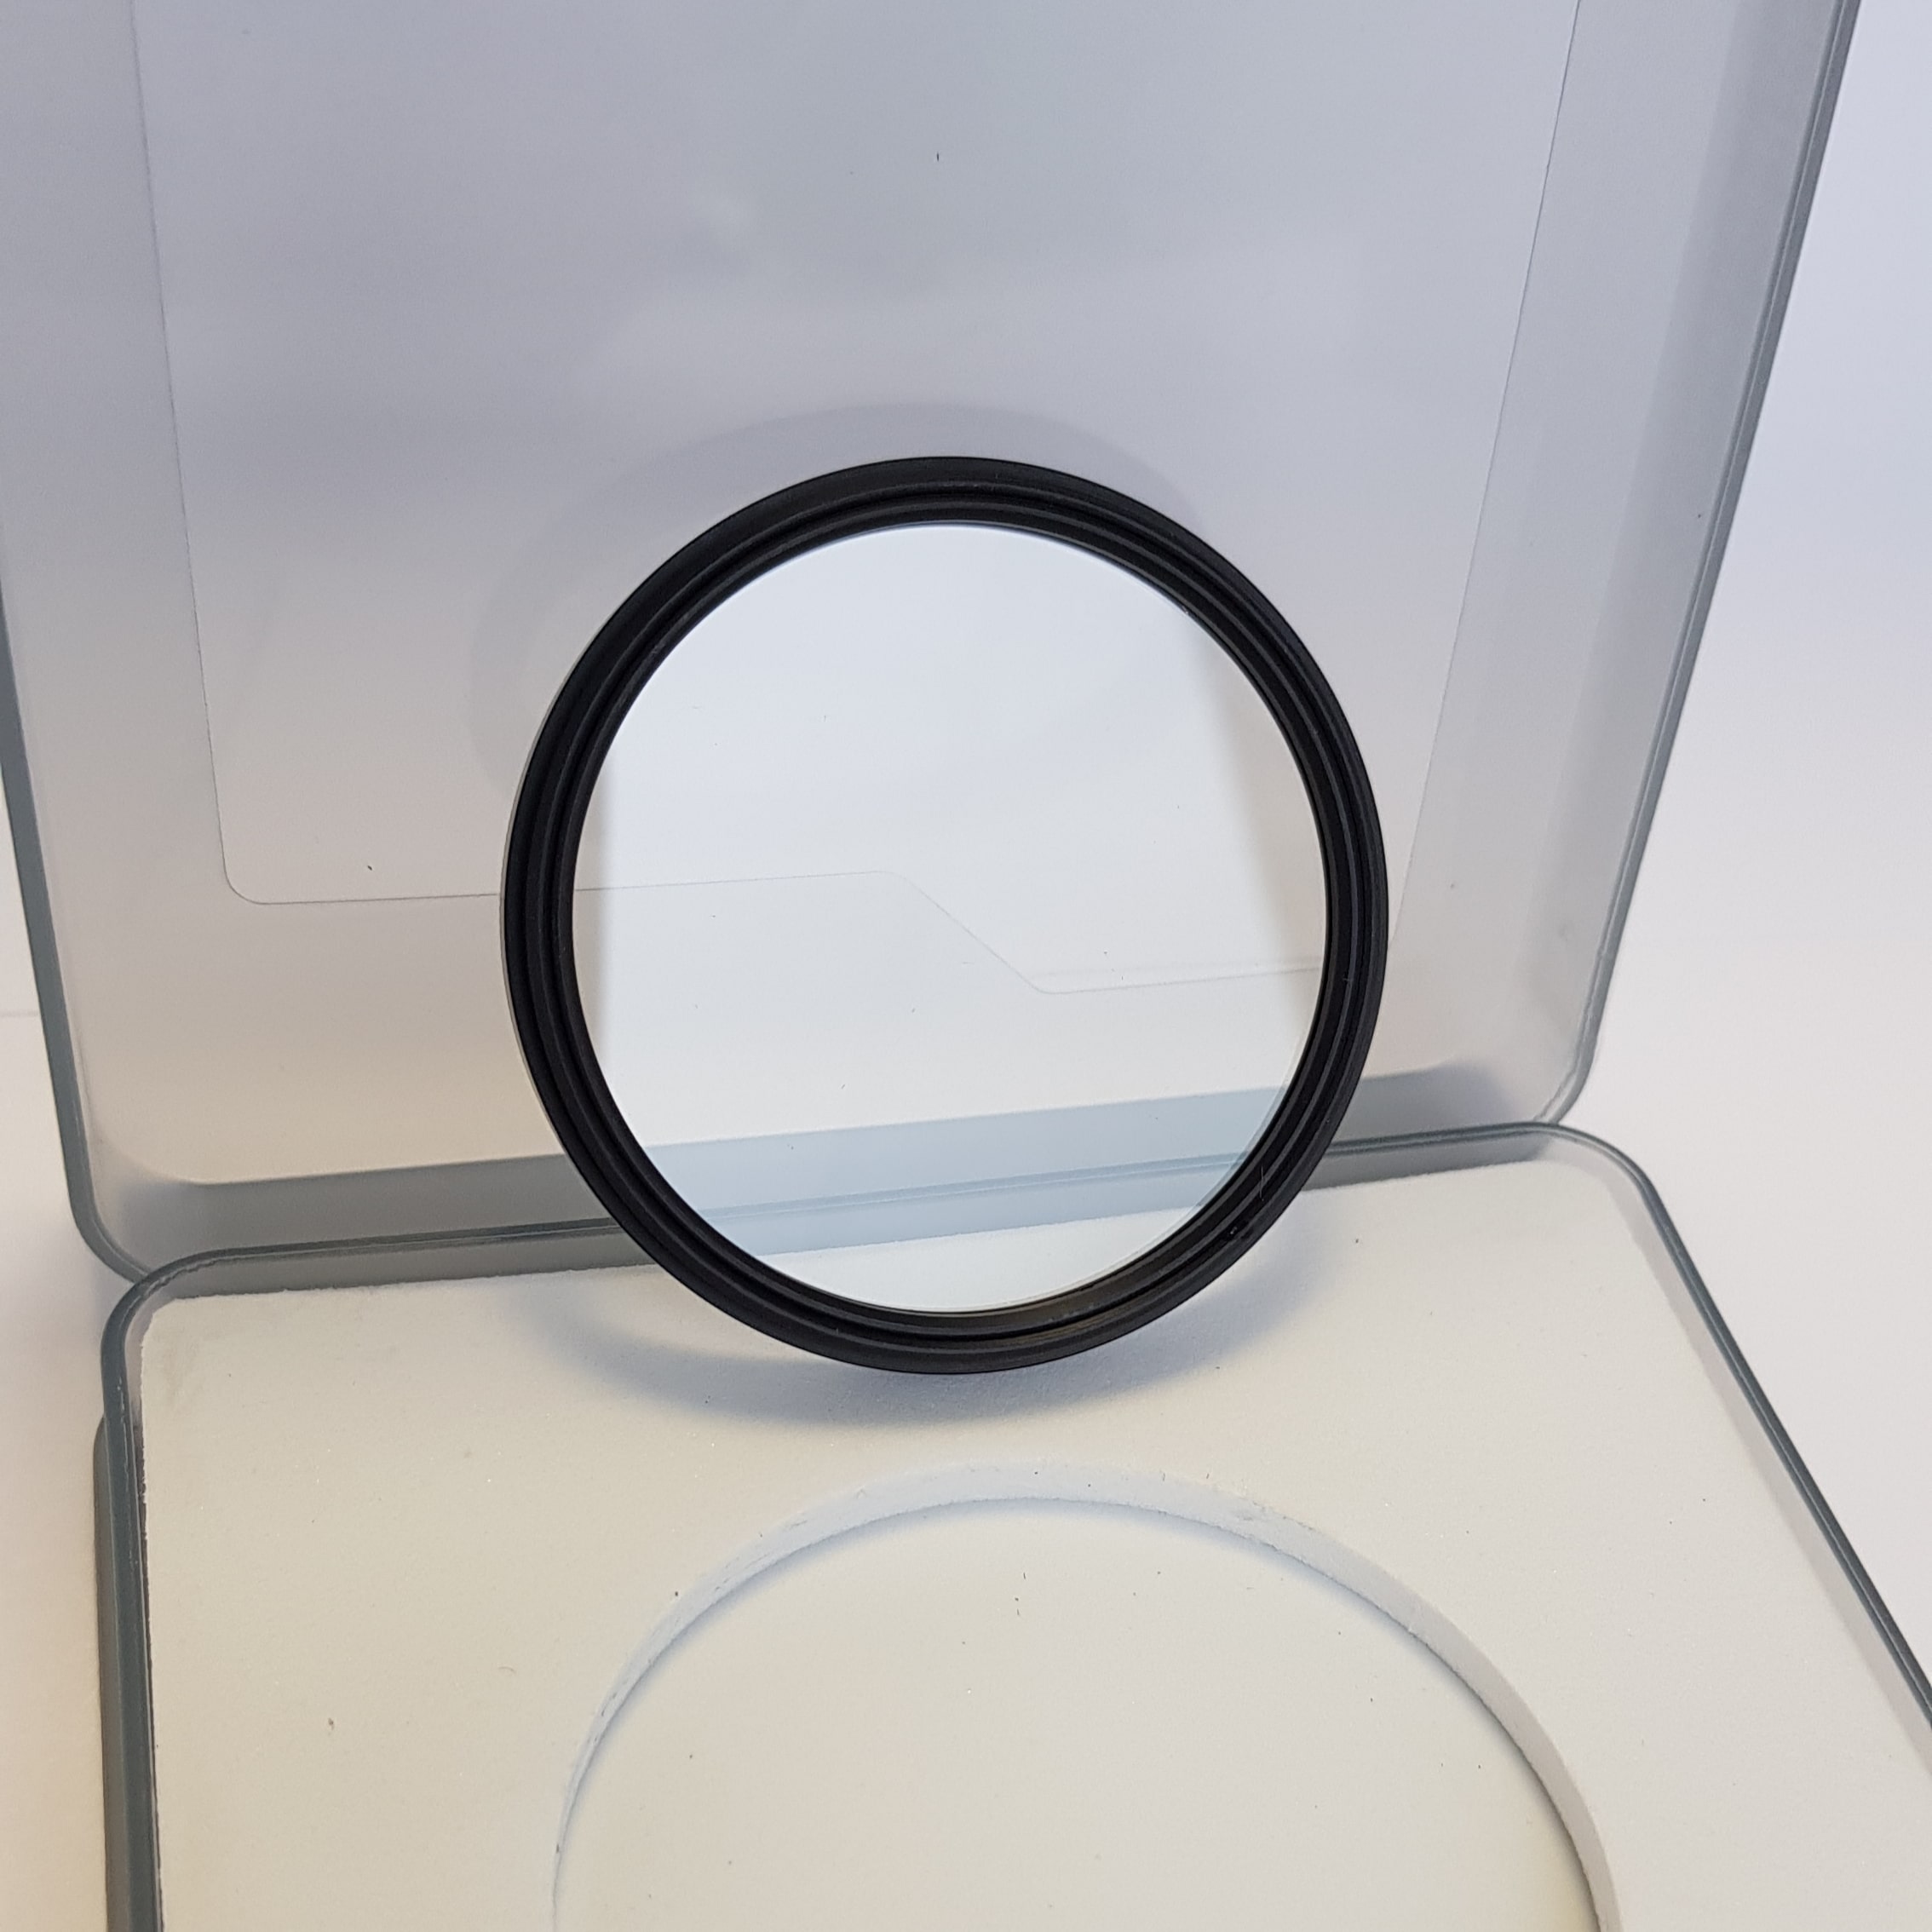 Защитный стеклянный фильтр для микроскопа Eschenbach 33205